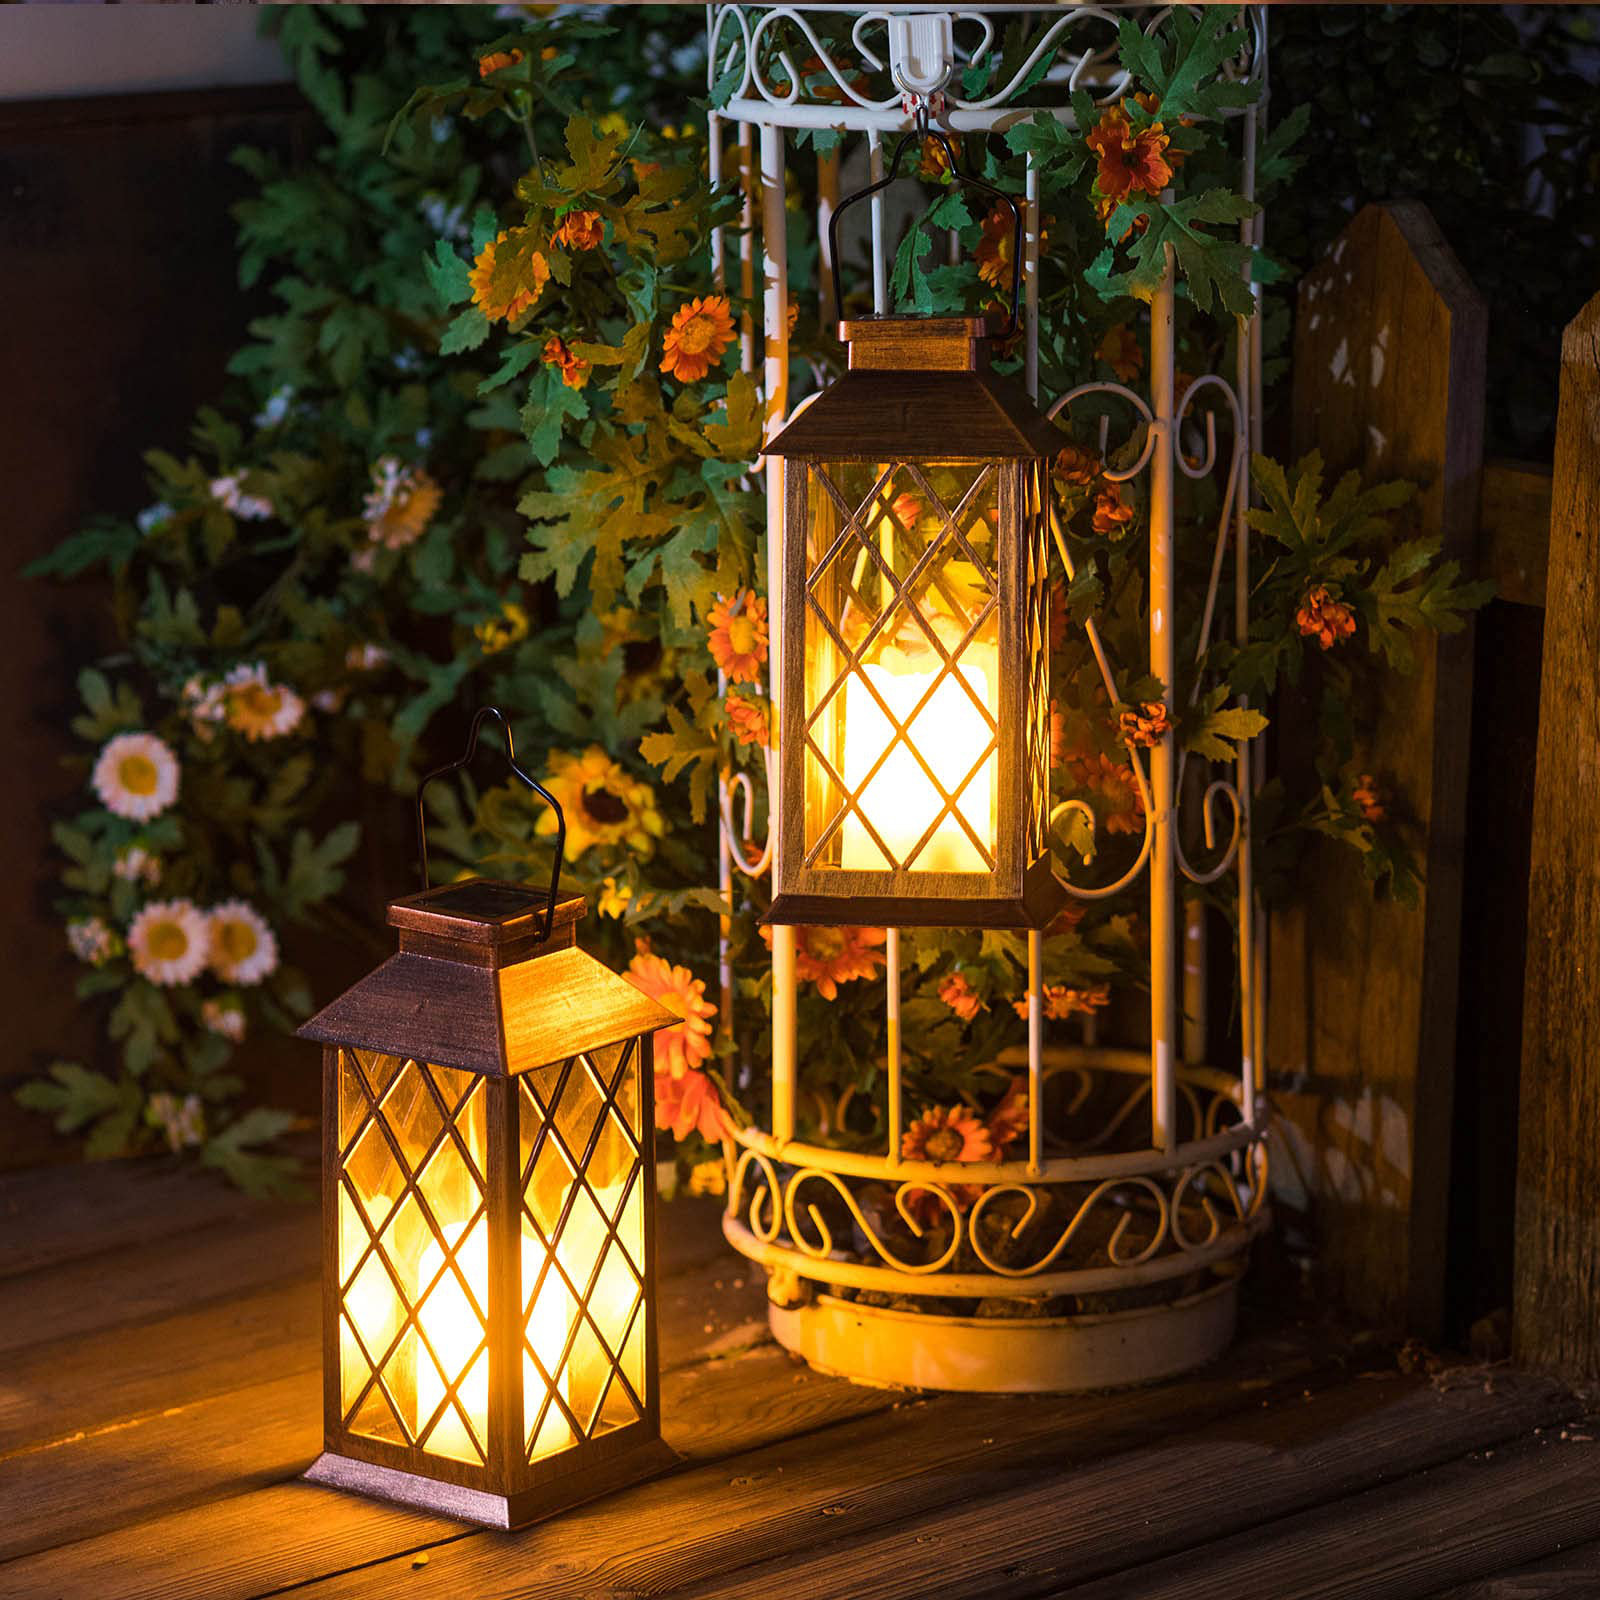 https://assets.wfcdn.com/im/32846820/compr-r85/2472/247243459/115-solar-powered-outdoor-lantern.jpg